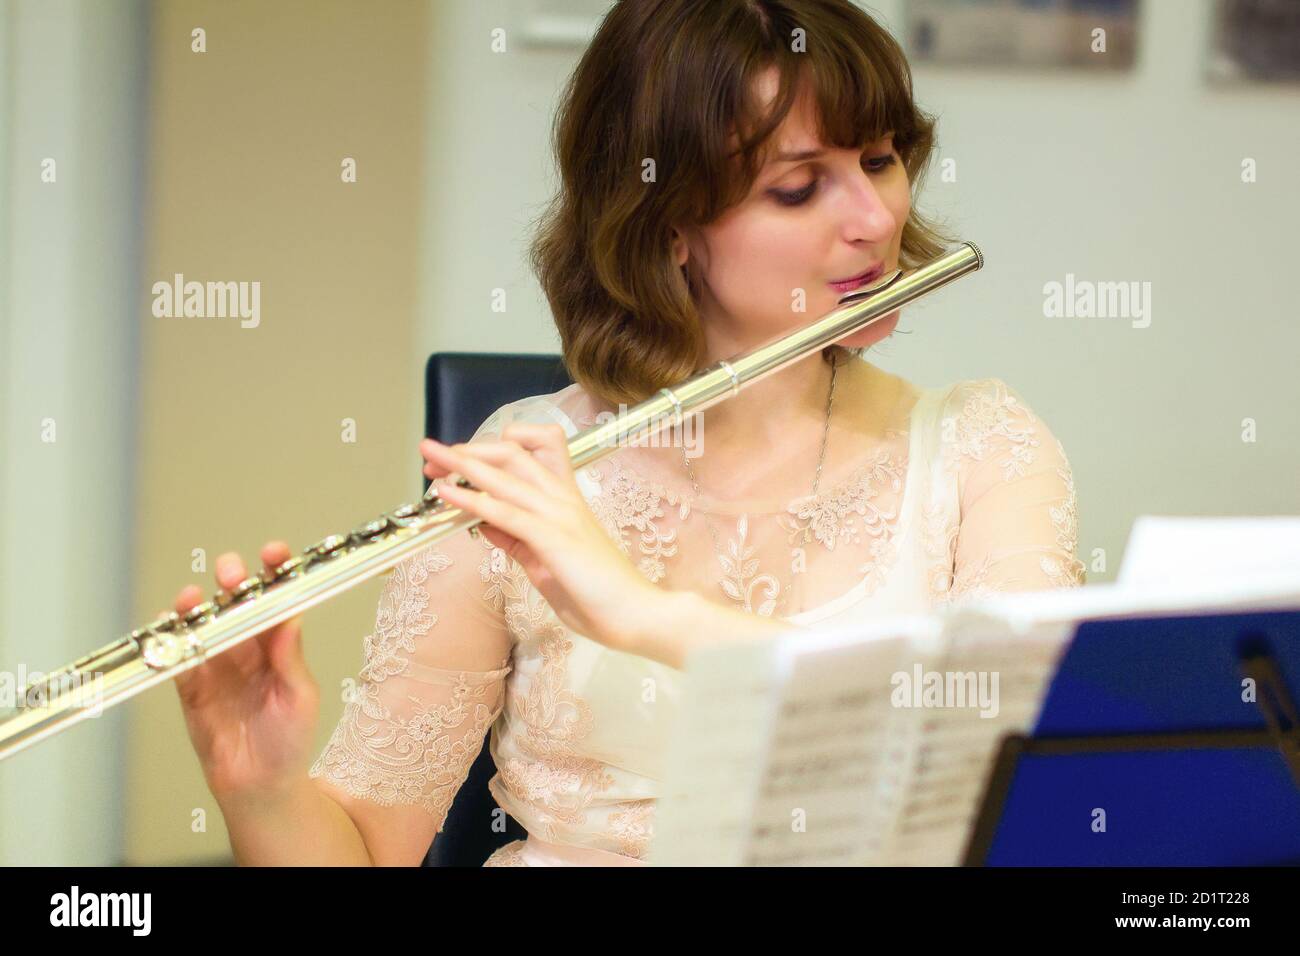 Das Mädchen spielt eine große silberne Querflöte. Eine Frau in weißen  Kleidern bläst bei einem Konzert eine Orchesterflöte. In den Händen des  Musikers Metal mus Stockfotografie - Alamy